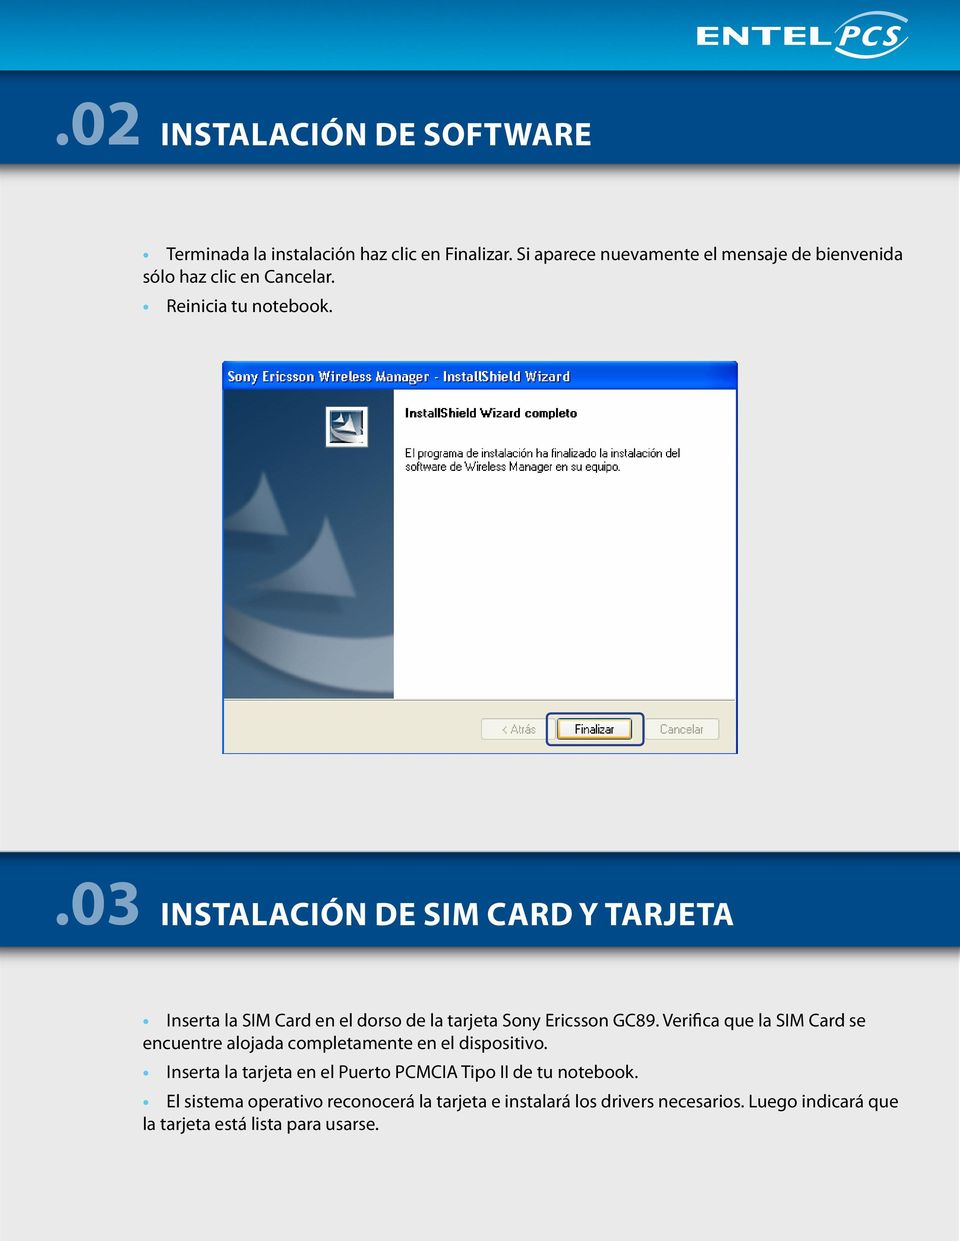 .03 Instalación de SIM card y Tarjeta Inserta la SIM Card en el dorso de la tarjeta Sony Ericsson GC89.